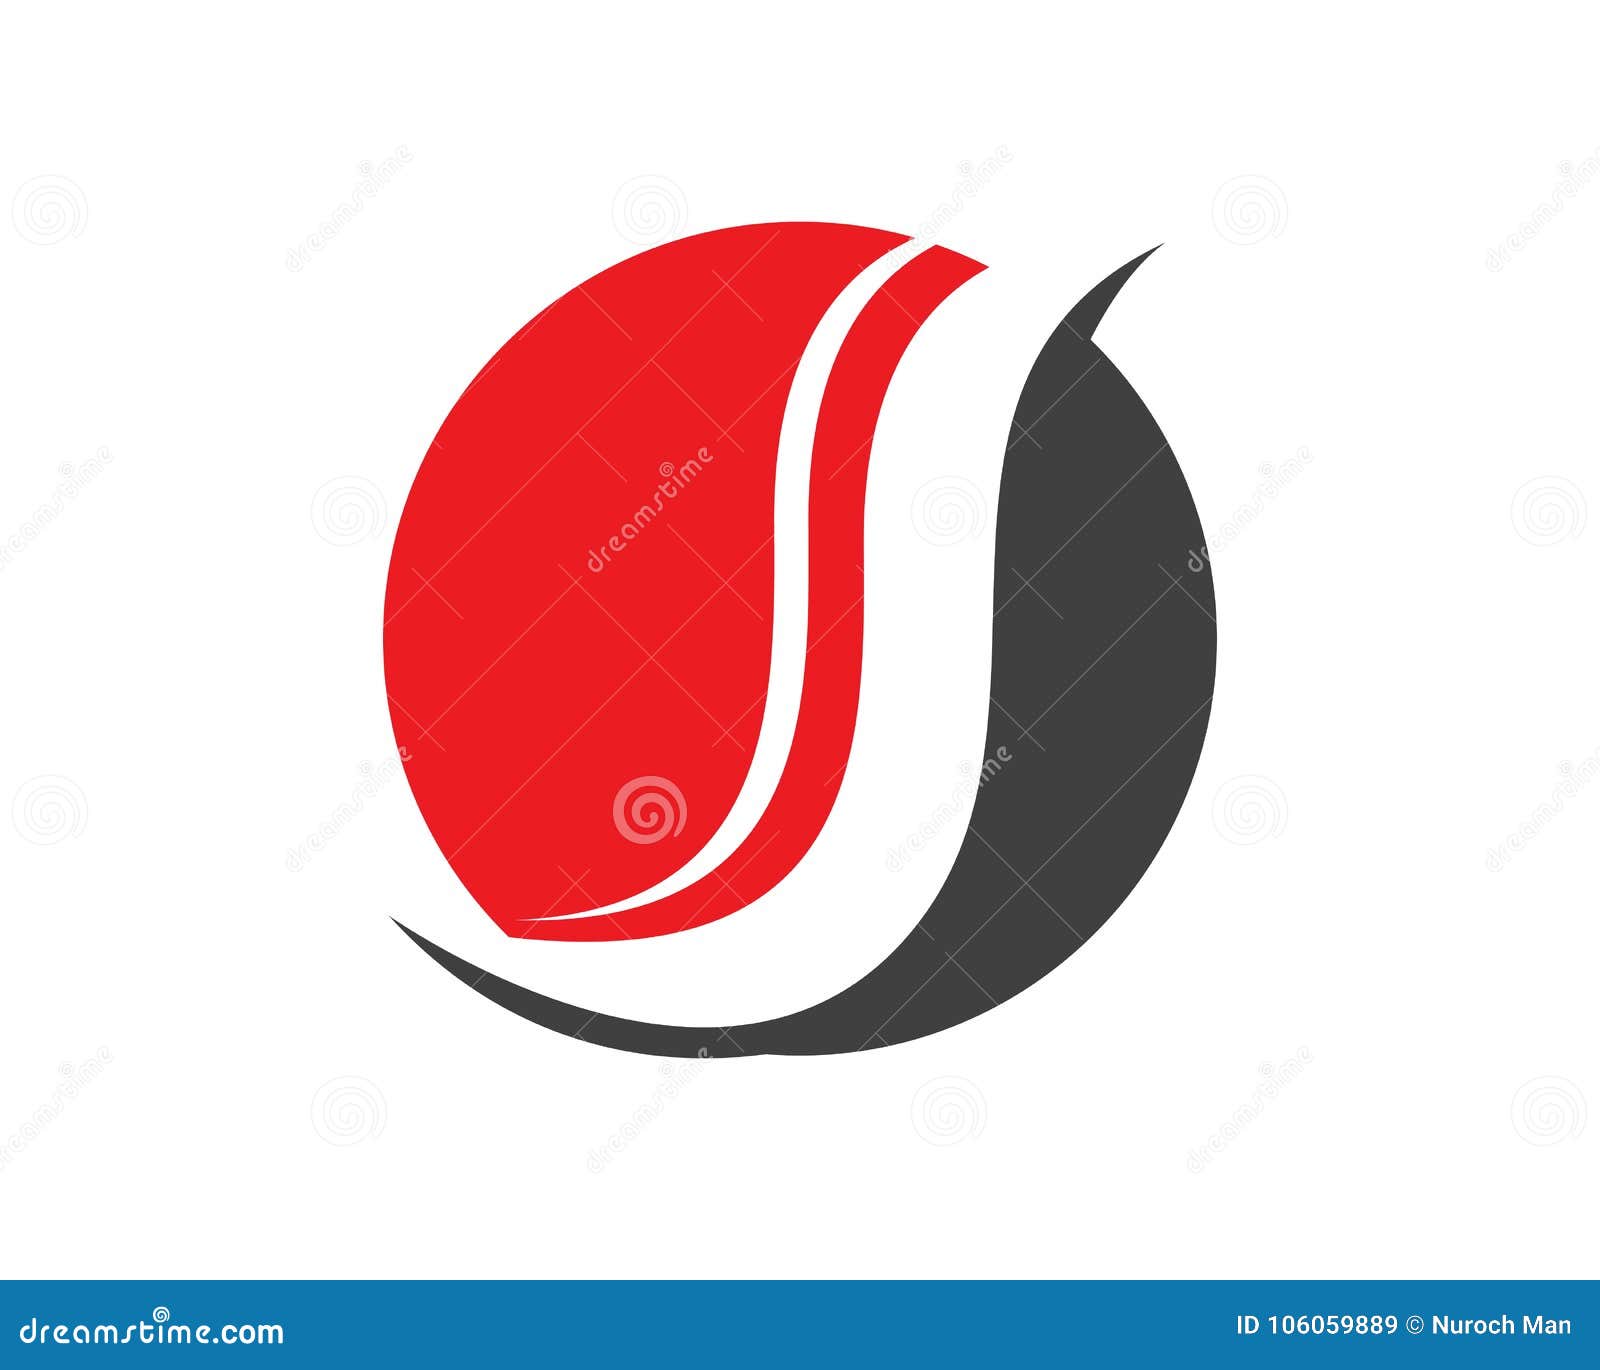 Business Corporate Letter S Logo Design Stock Illustration ...